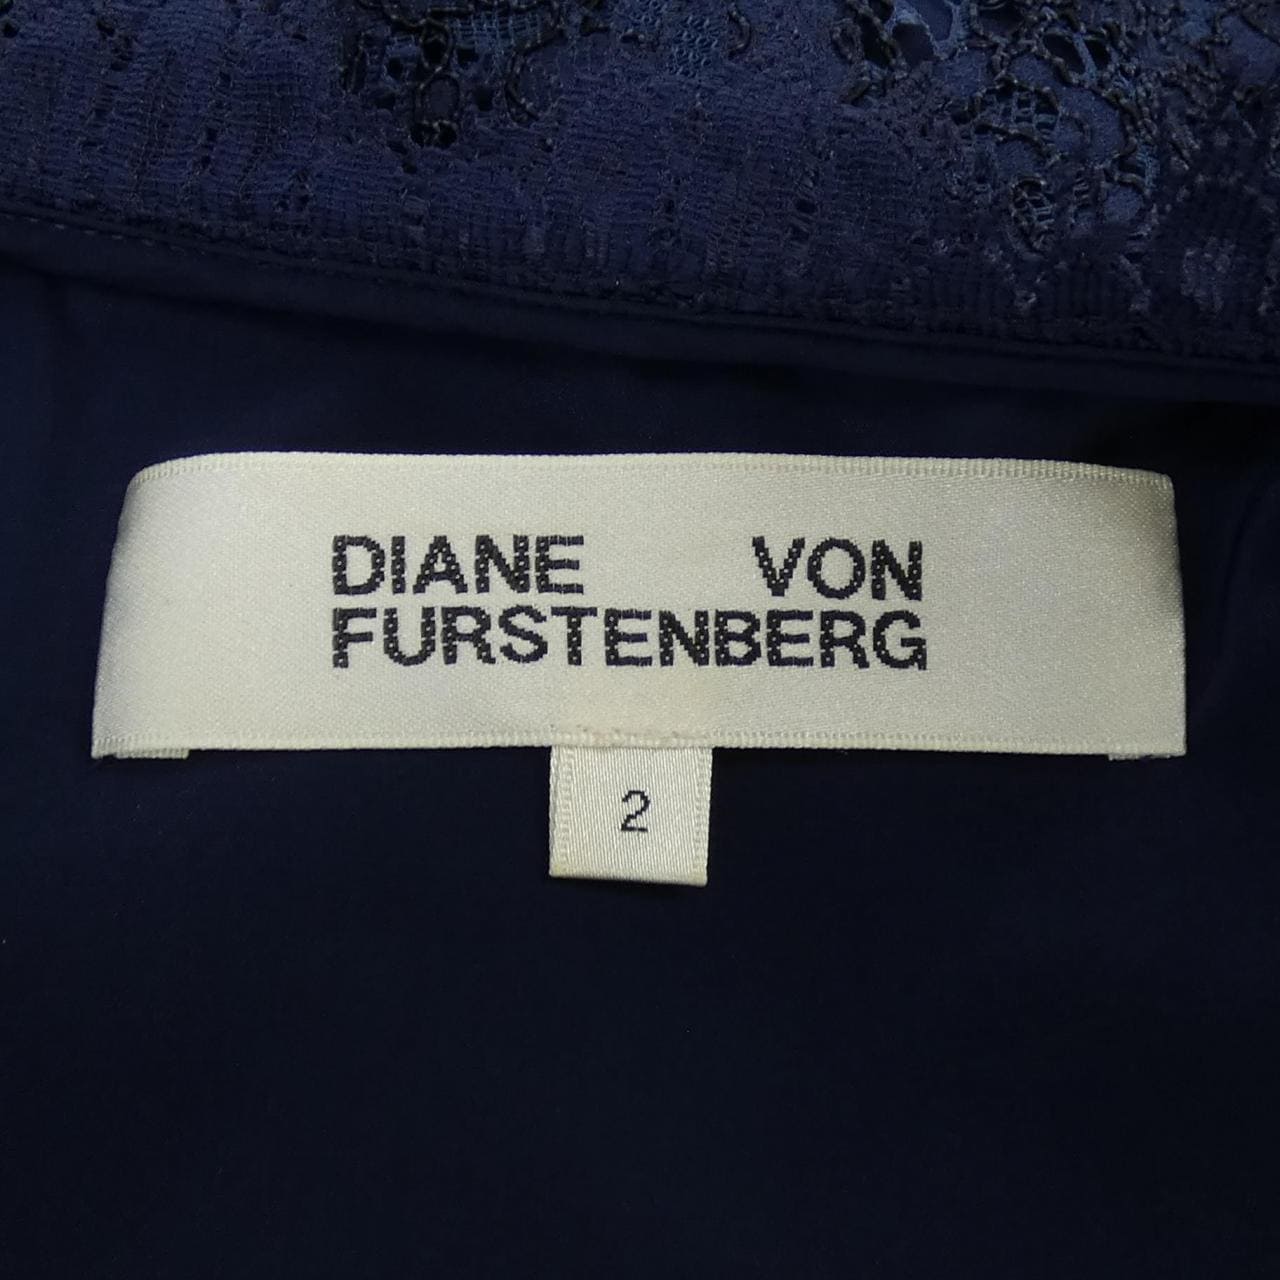 Diane von Fastenberg DIANE vonFURSTENBERG连衣裙